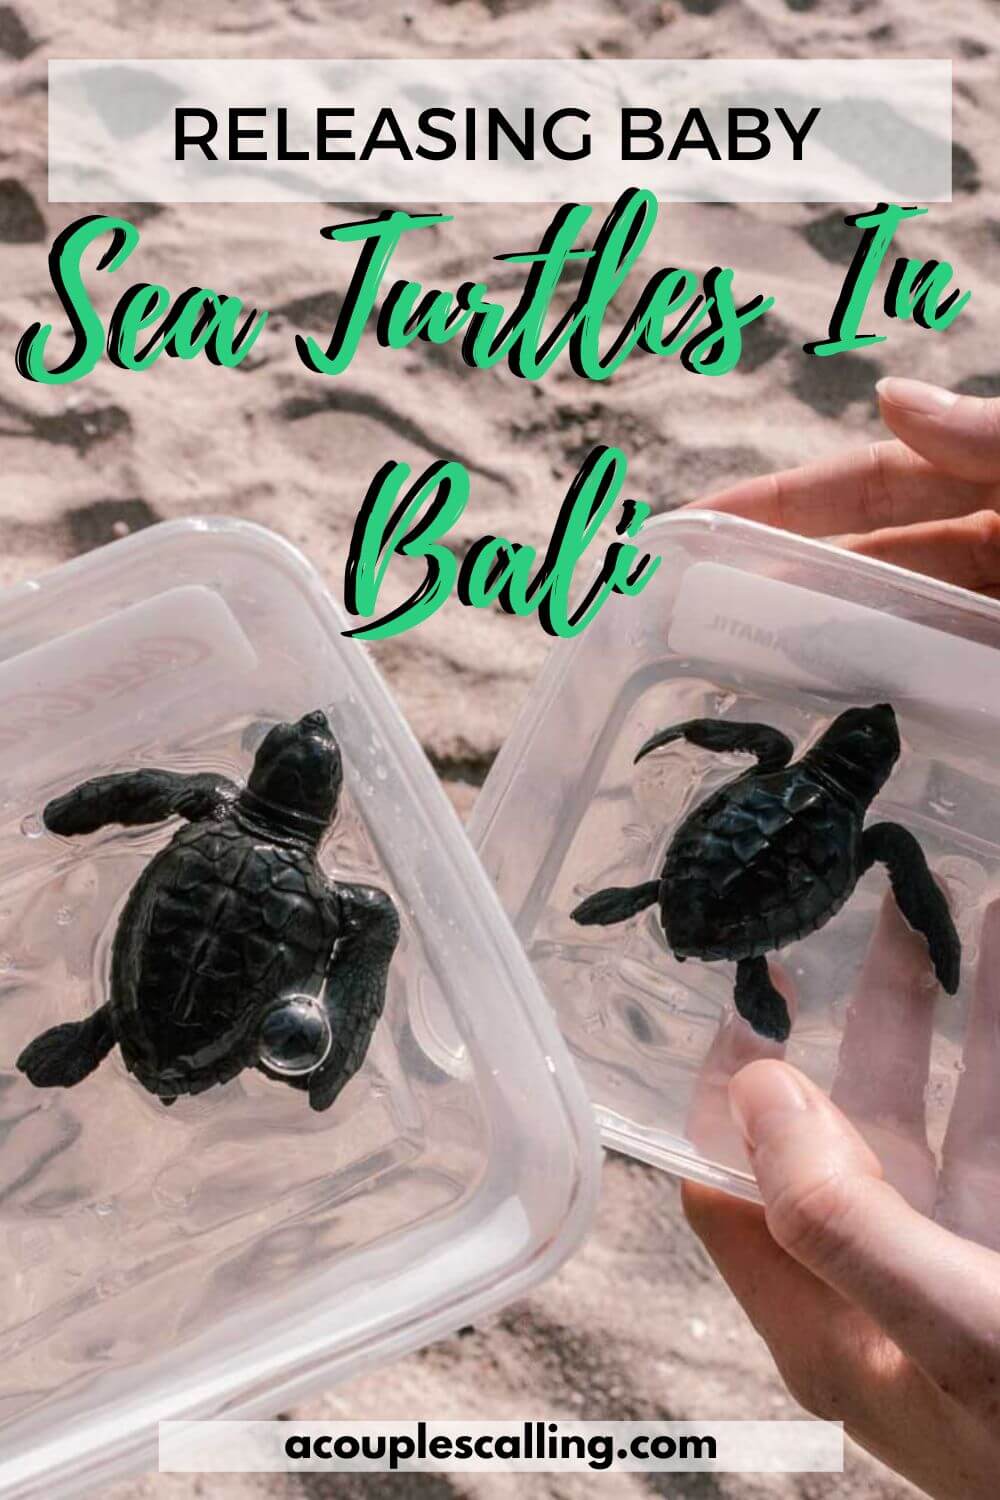 Releasing baby turtles in Bali